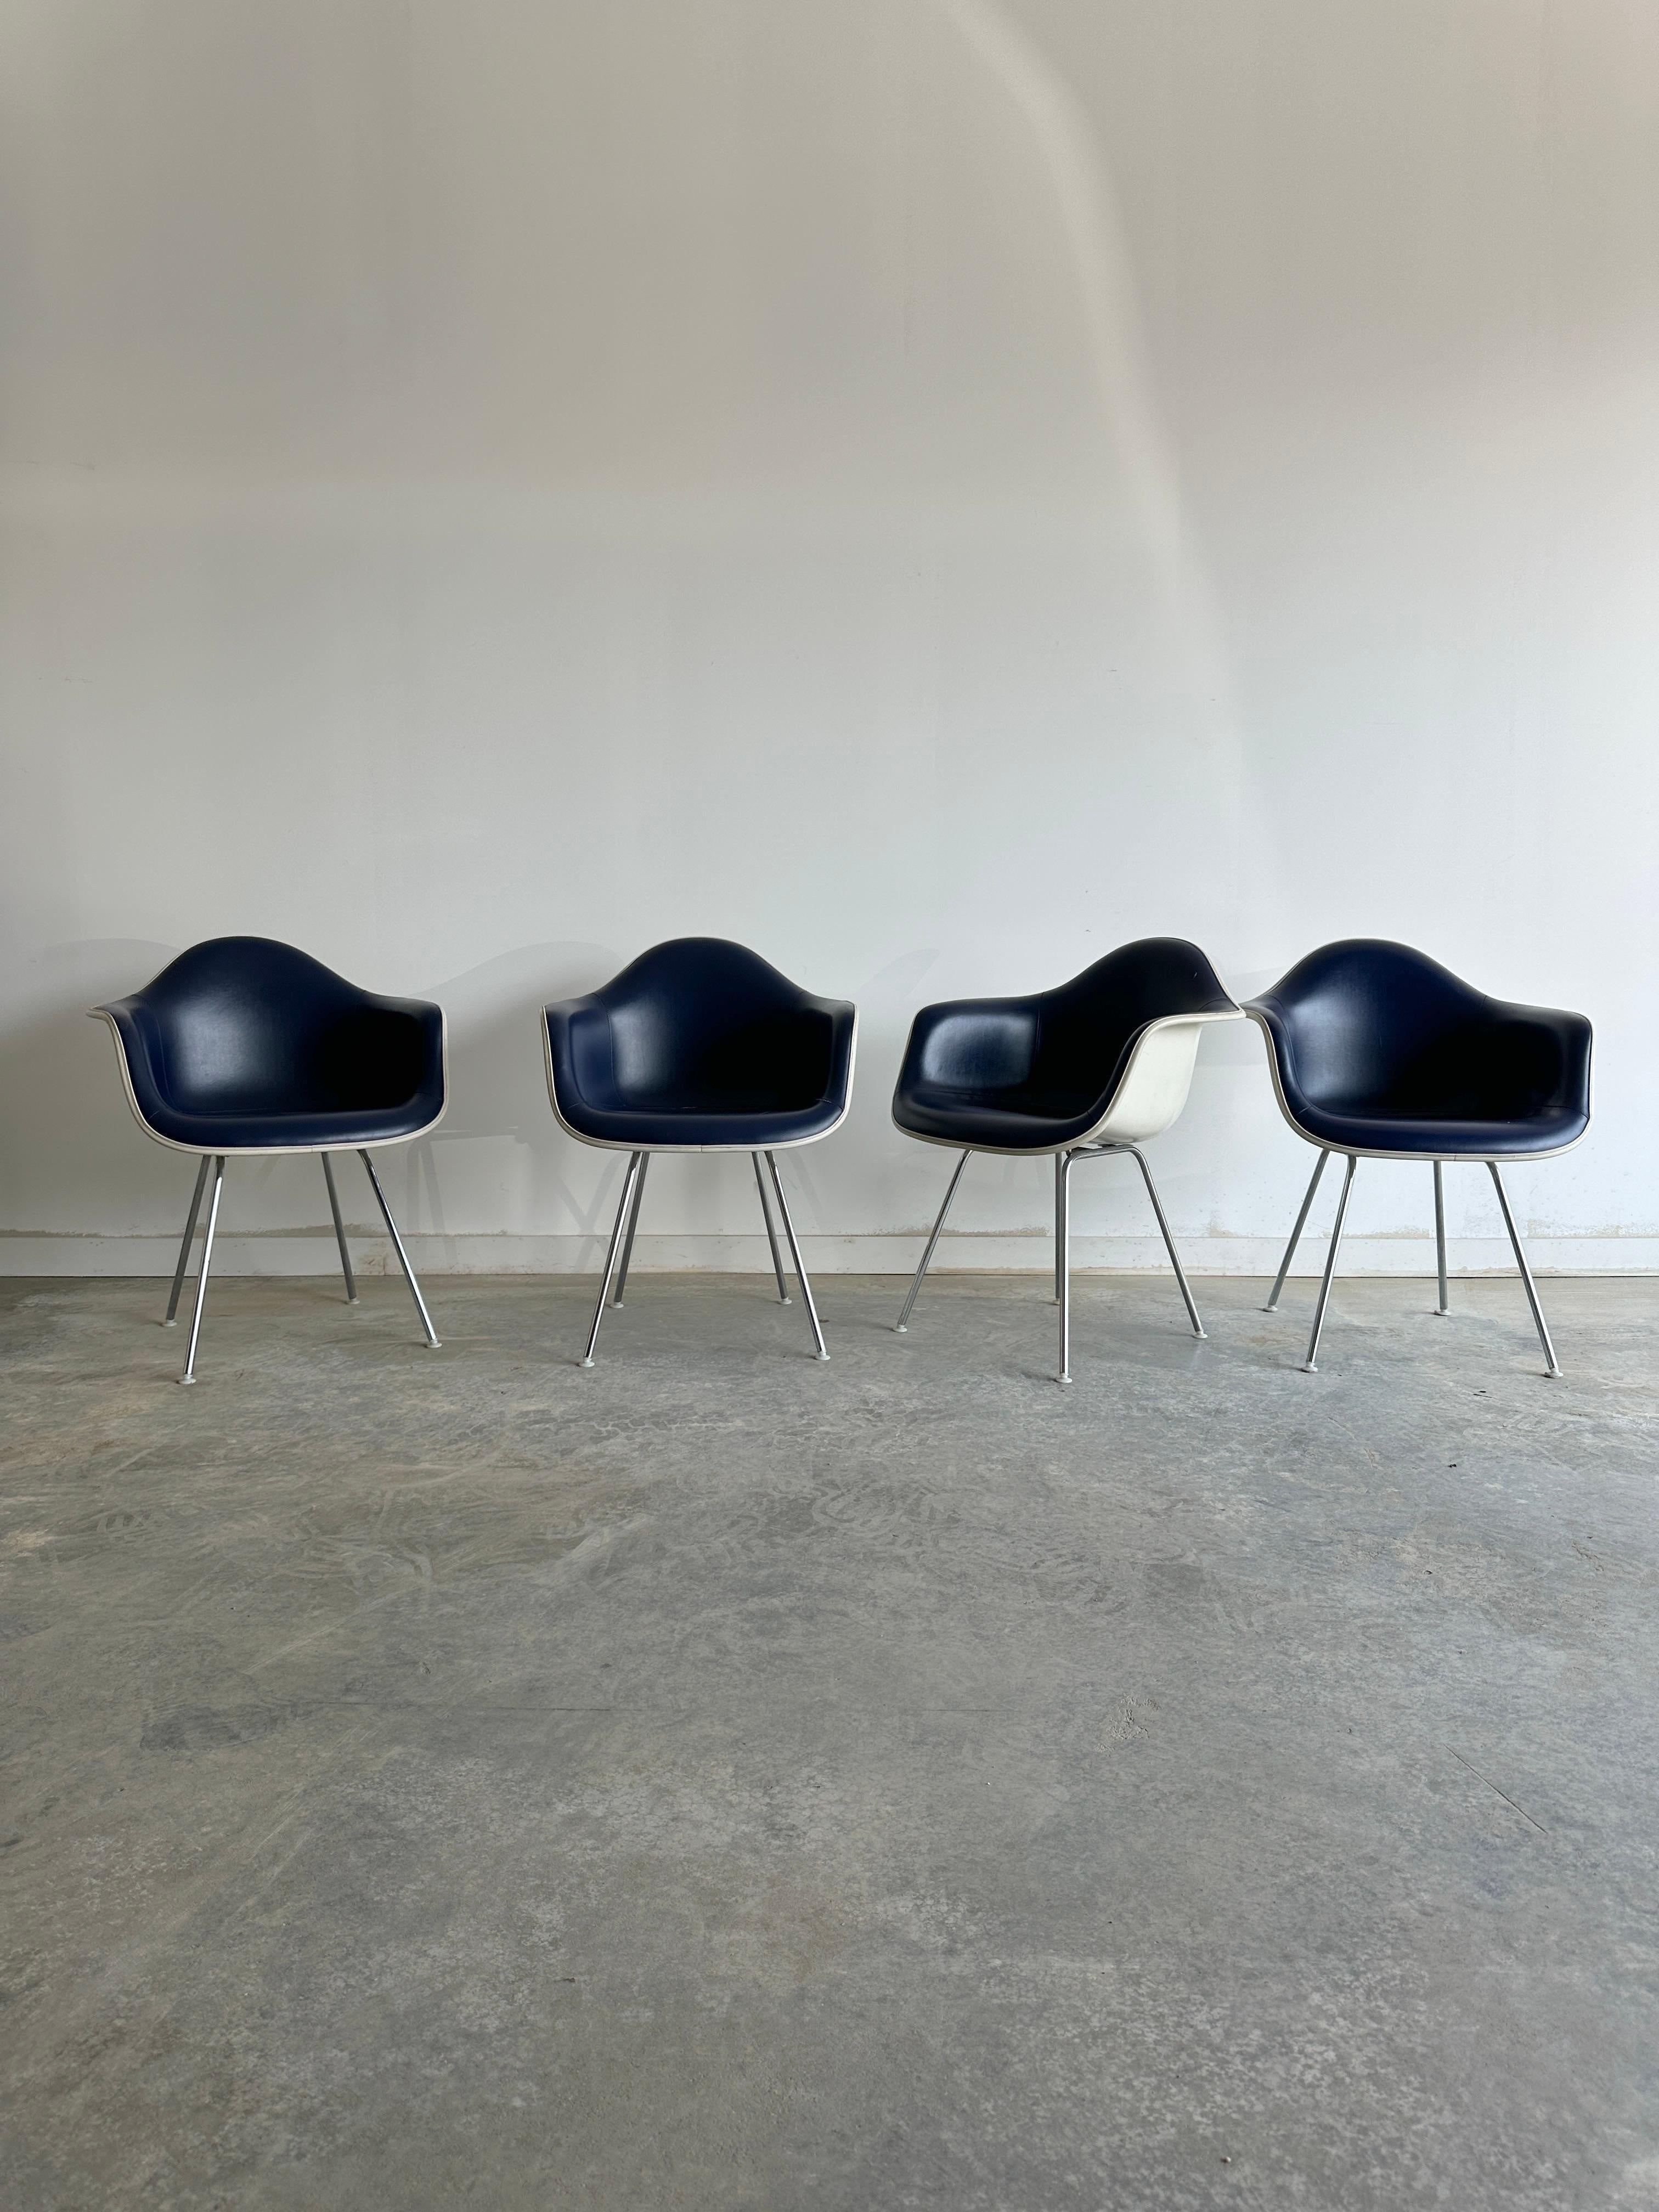 Quatre fauteuils dax classiques en cuir bleu avec bord en corde de Charles et Ray Eames pour Herman Miller. Ces chaises ont été conçues dans les années 1950 par le légendaire couple américain, qui a expérimenté de nouveaux matériaux et techniques